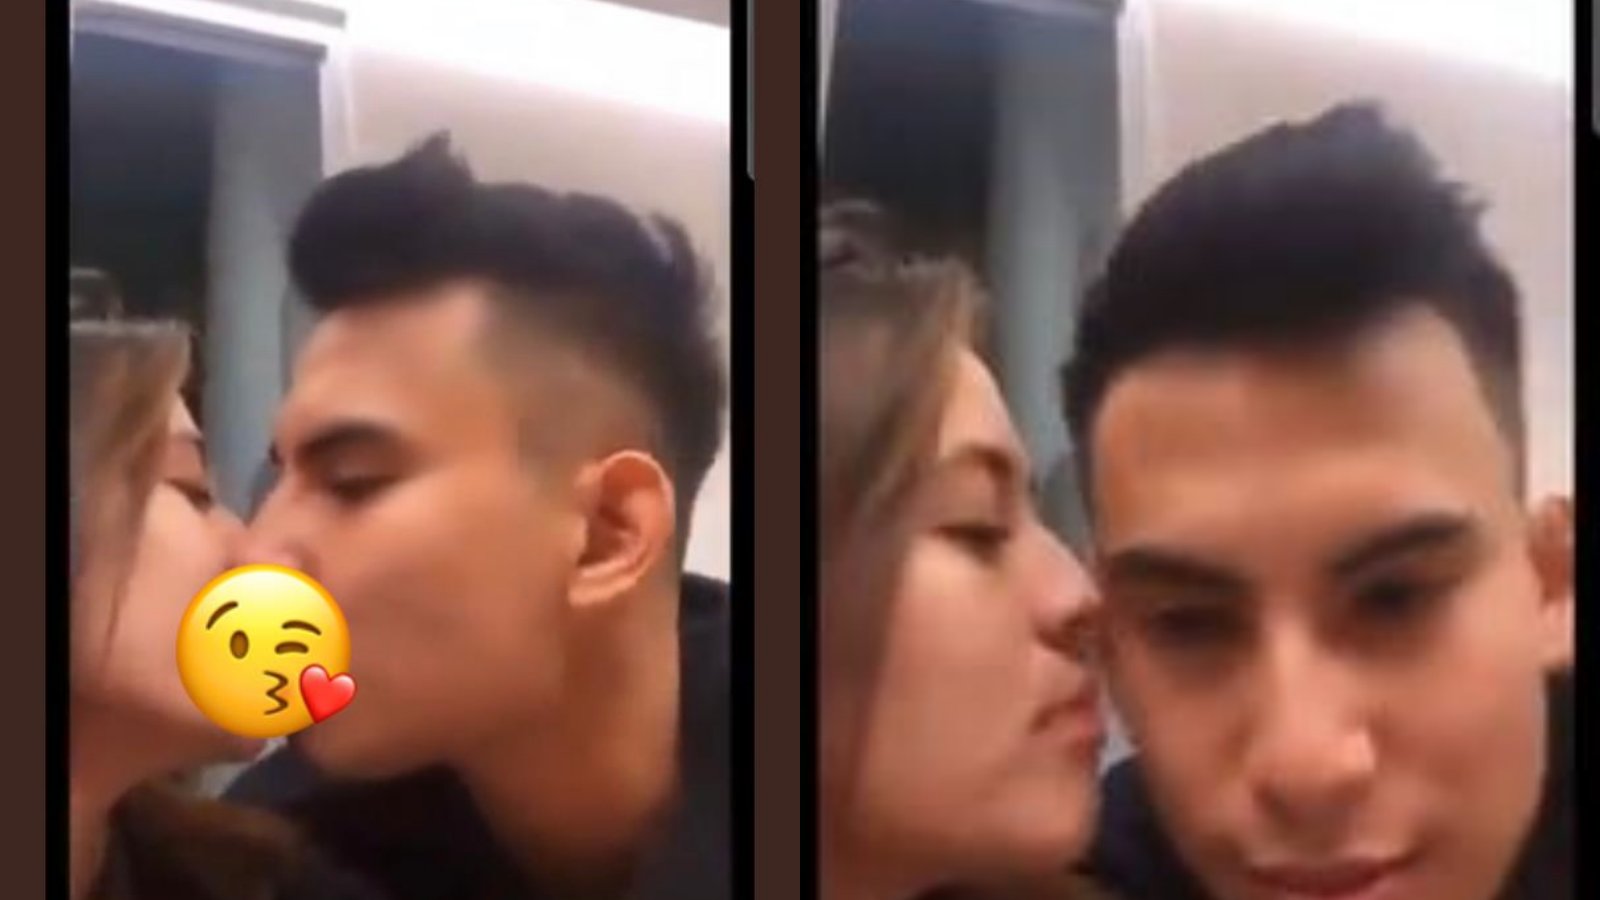 Awal Mula Zara Adhisty Ciuman dengan Niko Al Hakim, Netizen: Kelihatan Sama-sama Nafsu